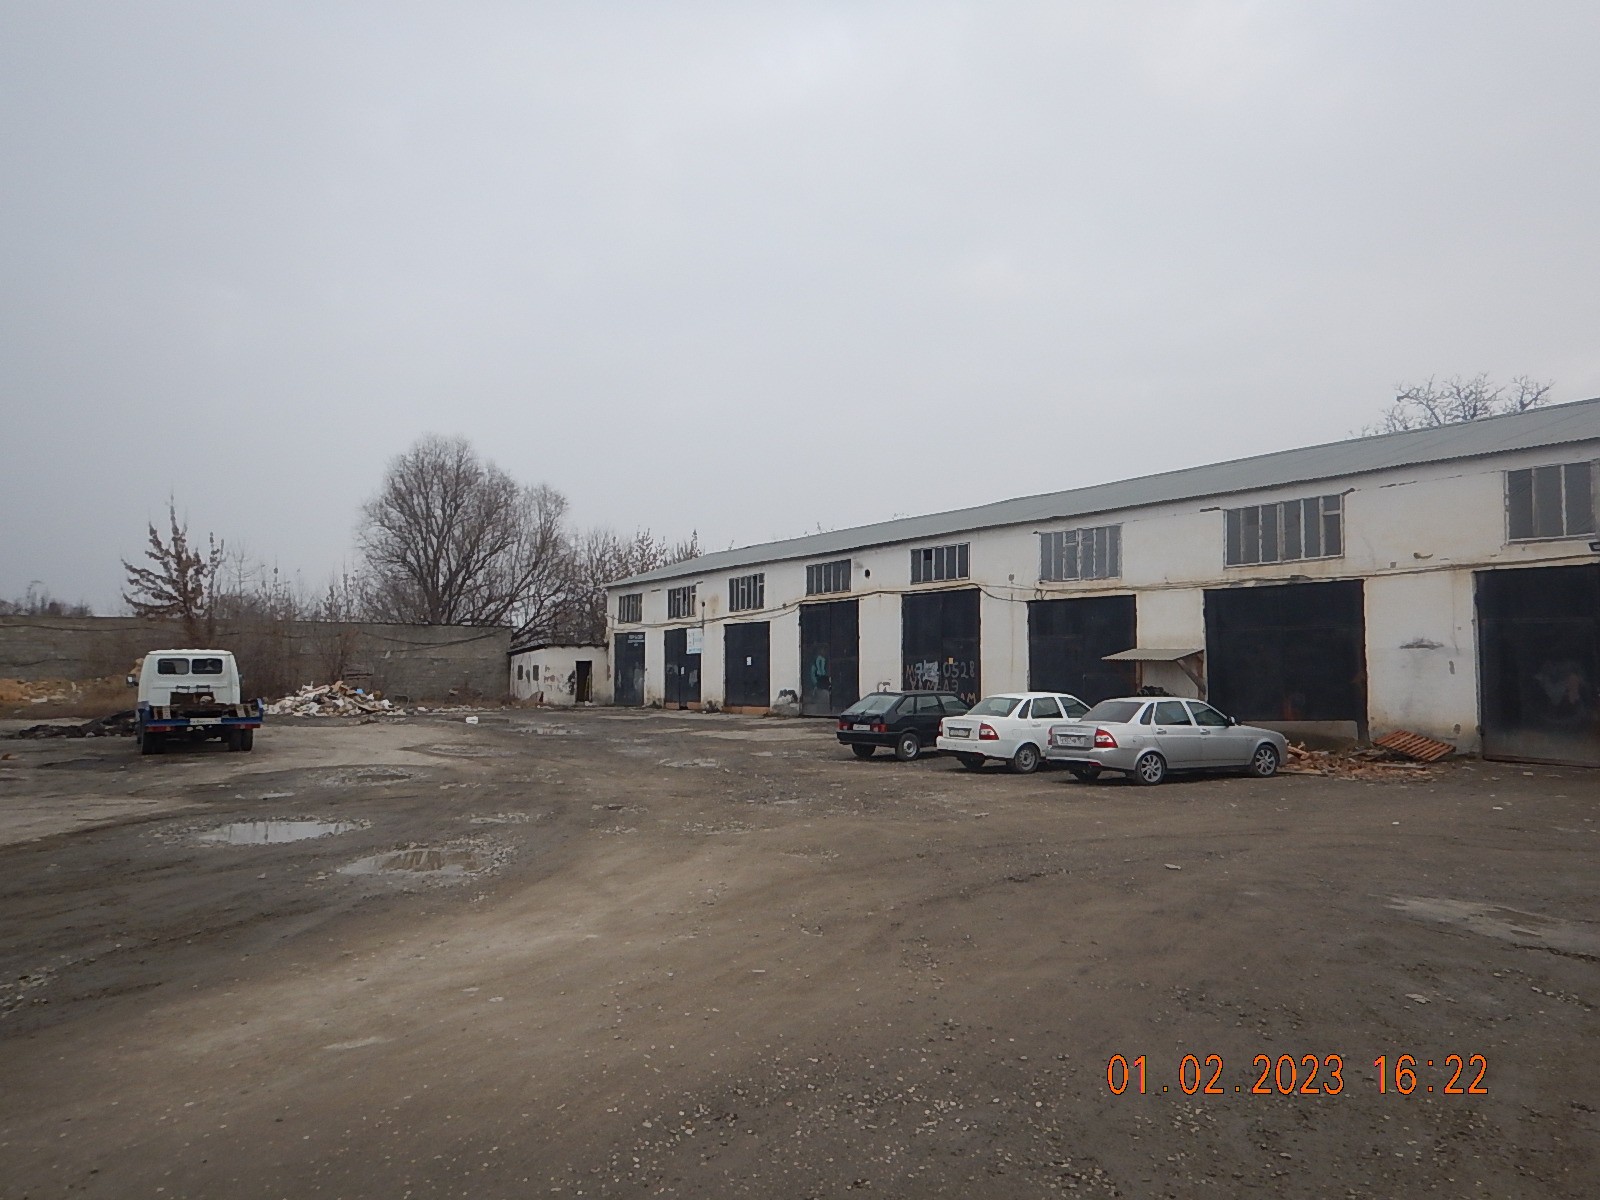 Нежилое здание гаража, общей площадью 1 148 кв.м., кадастровый номер 20:17:0000000:11413, расположен